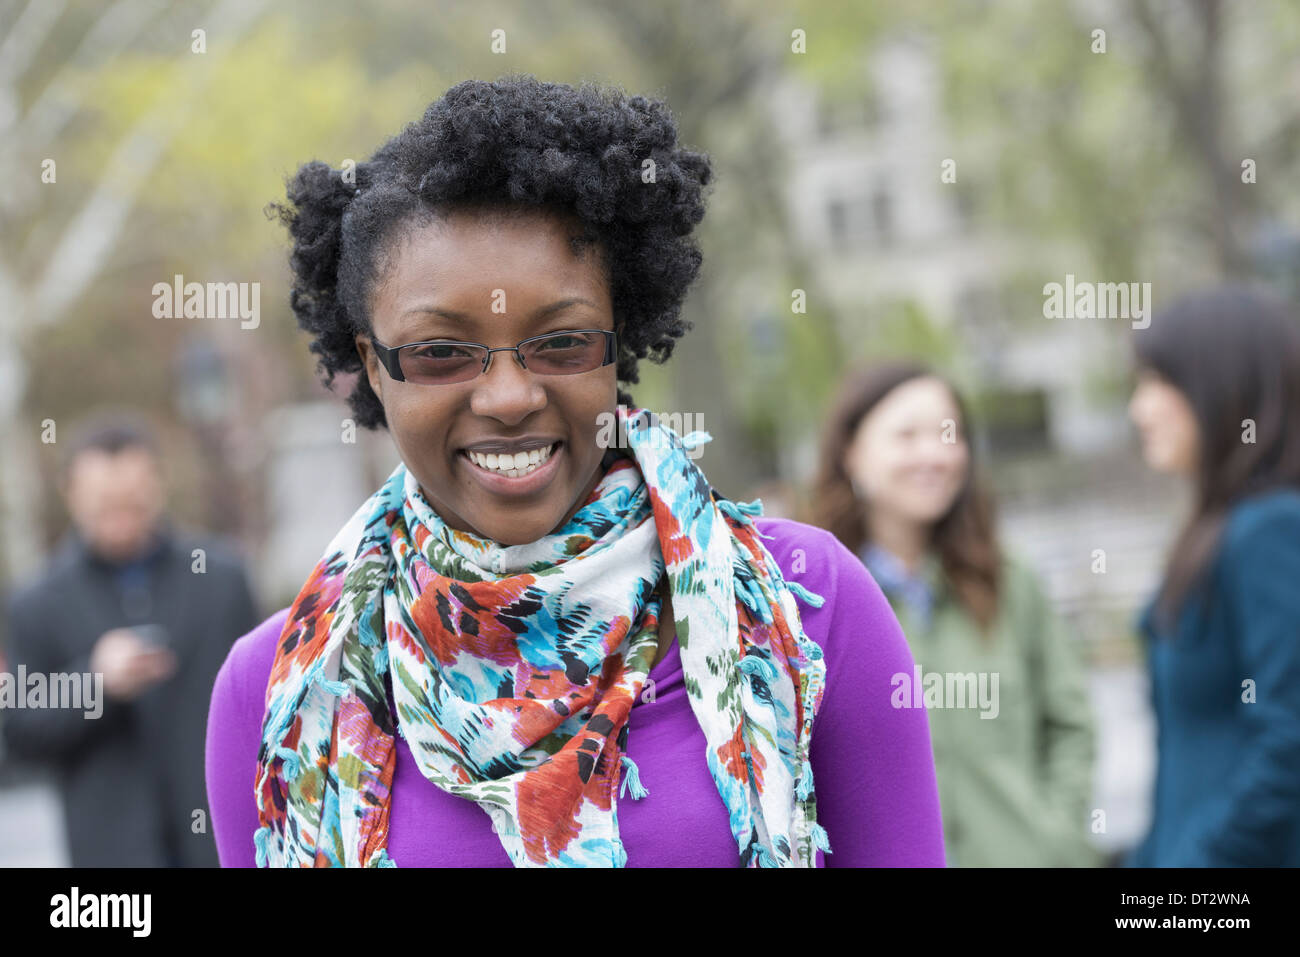 Un groupe de personnes dans un parc de la ville une jeune femme souriante portant une chemise violette et foulard floral Banque D'Images